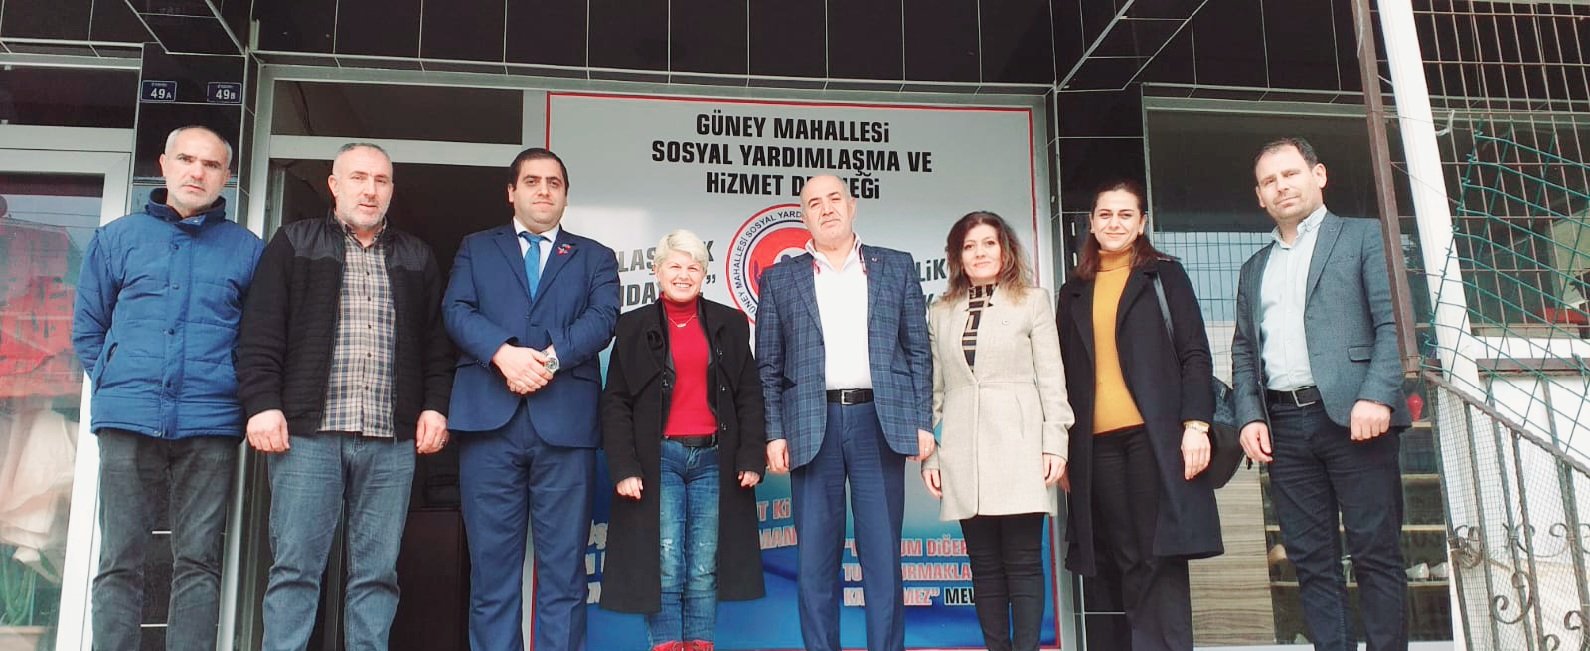 İl Başkanımız Serap Çakır ile Körfez Güney Mahallesi Dernek Başkanı Oktay Yaşar'ı ziyaret ettik